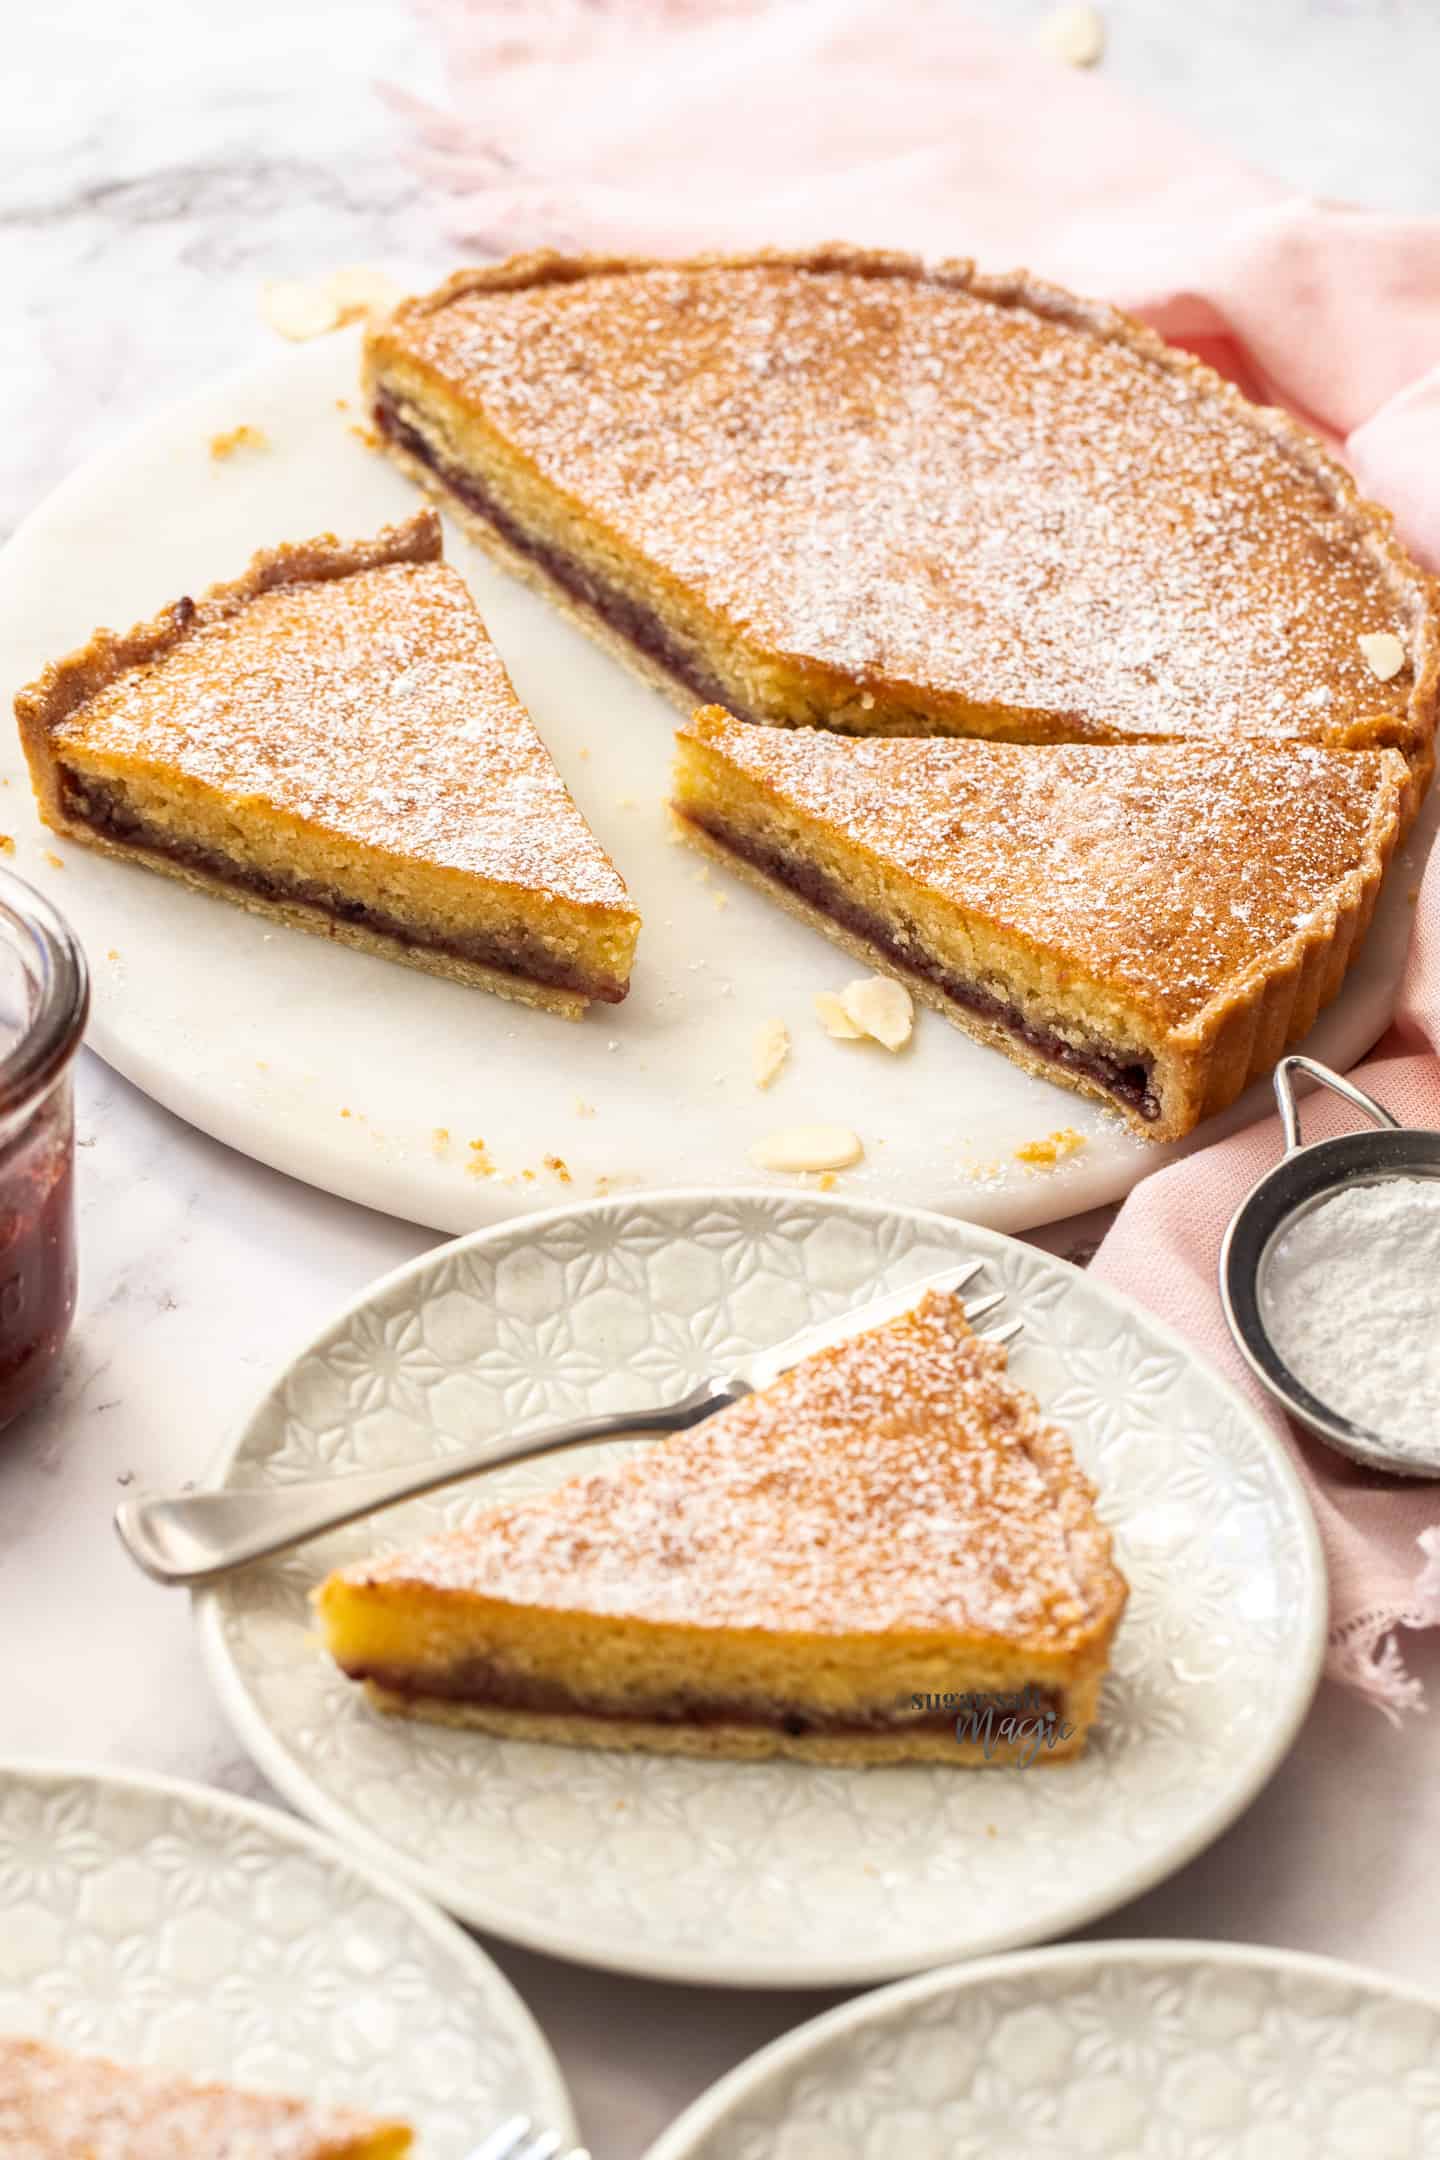 Cherry Bakewell Tart Recipe | Easy Classic British Dessert